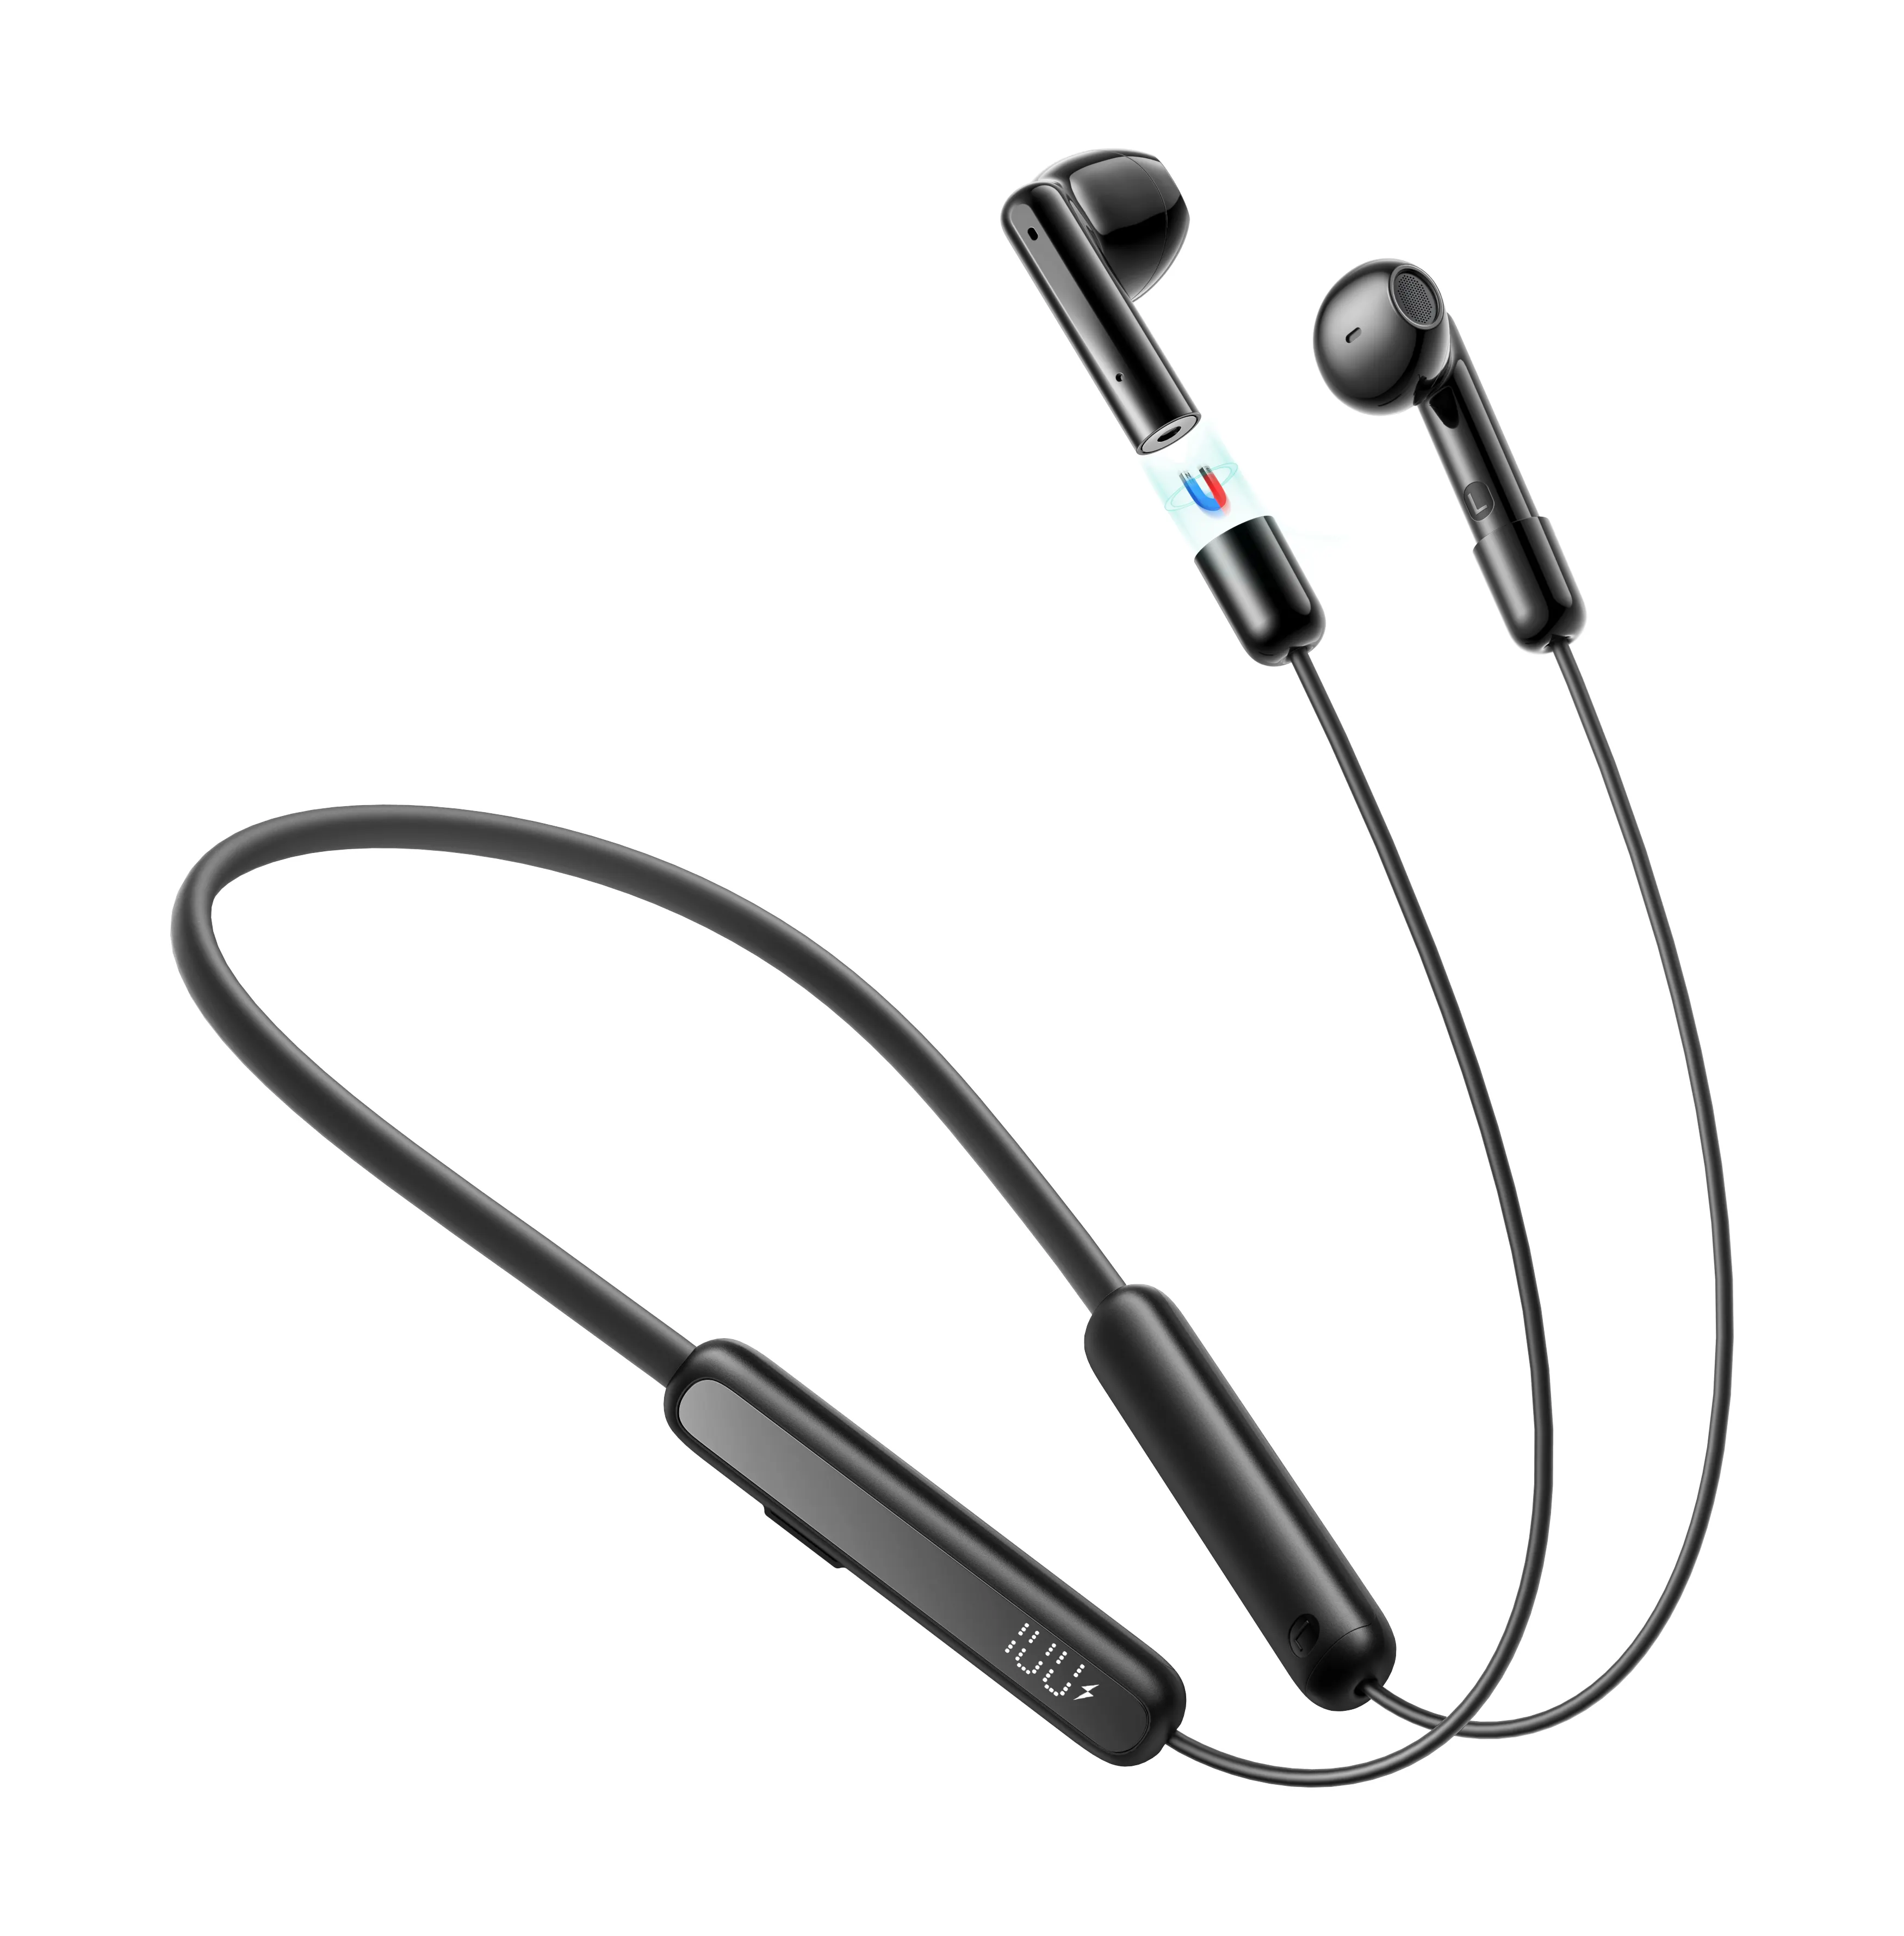 JOYROOM Großhandel Hals Hand Wireless Wear 2 in 1 Knospen In Ear Kopfhörer TWS Wireless Earbuds Gaming Ear phones